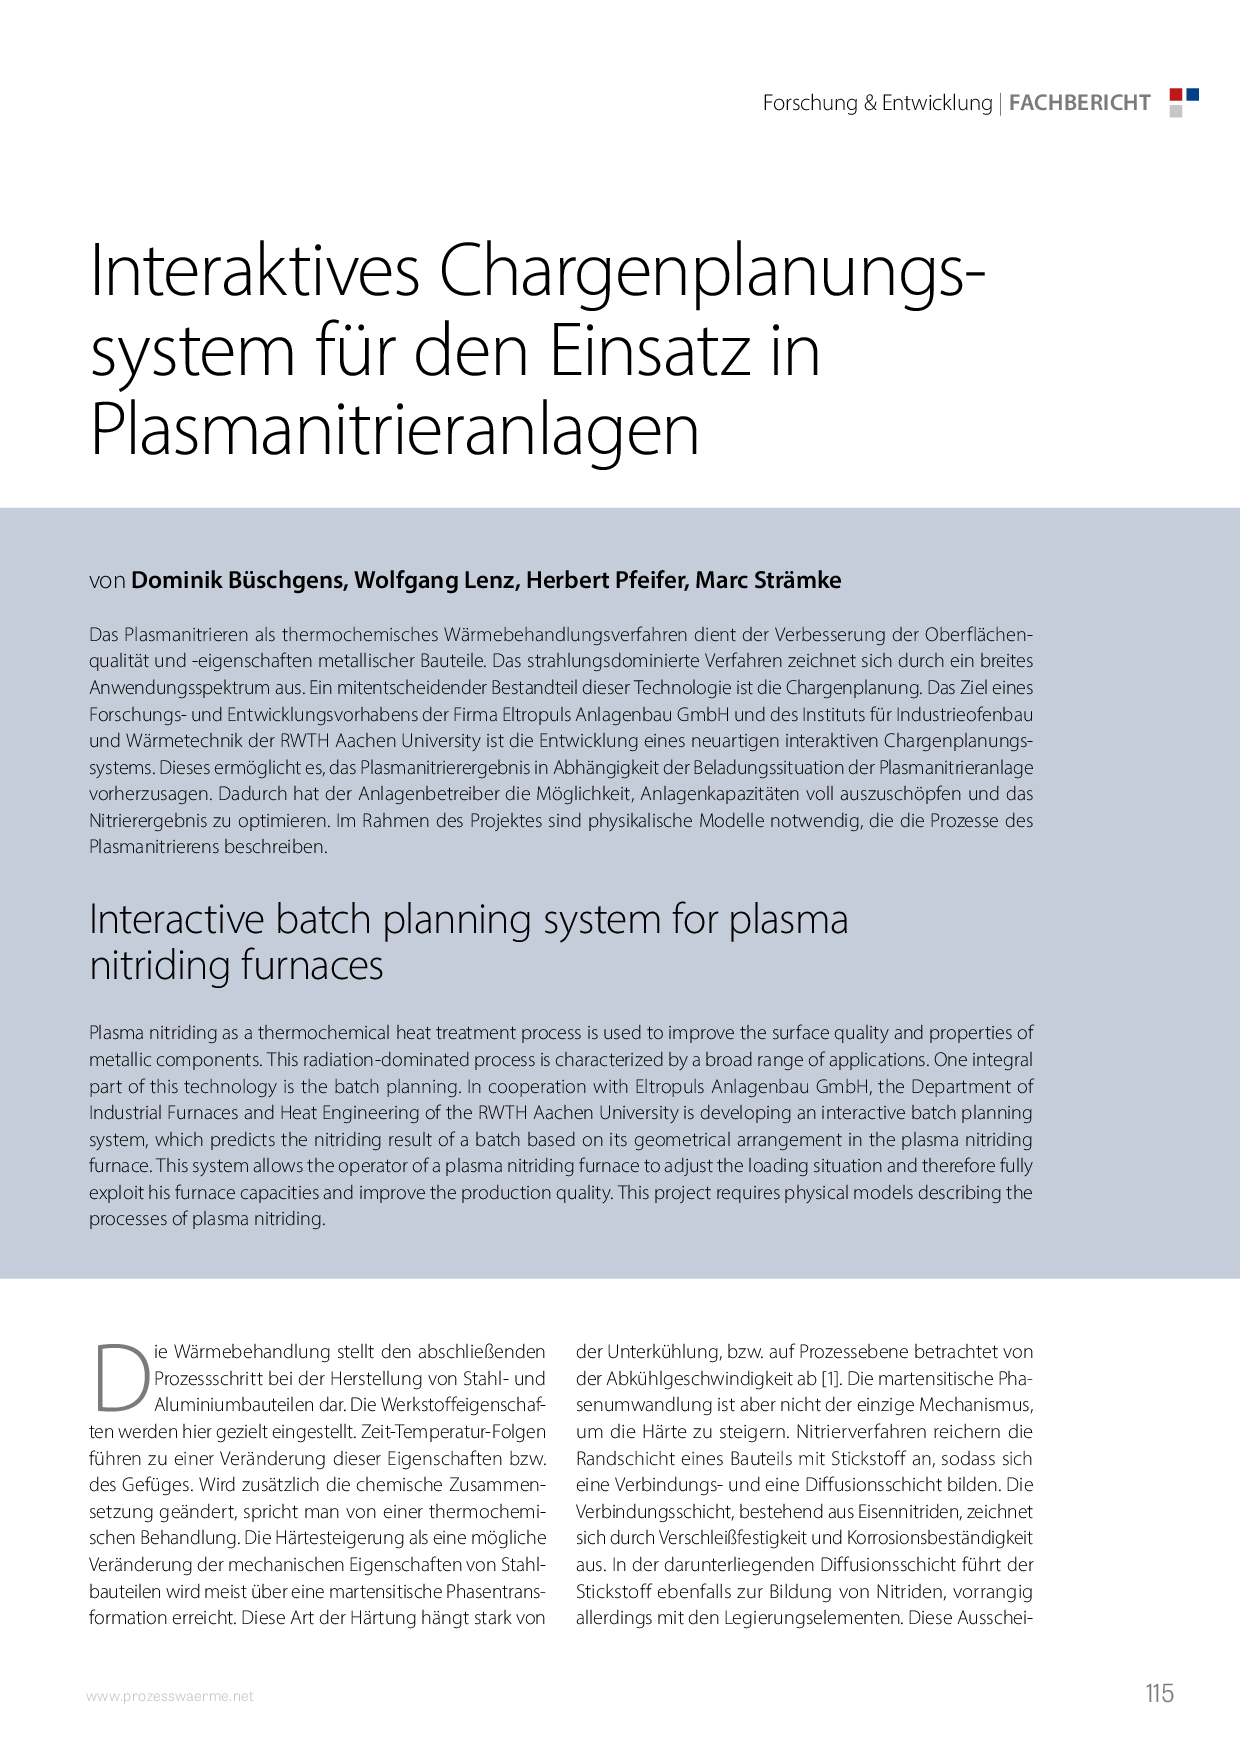 Interaktives Chargenplanungssystem für den Einsatz in Plasmanitrieranlagen